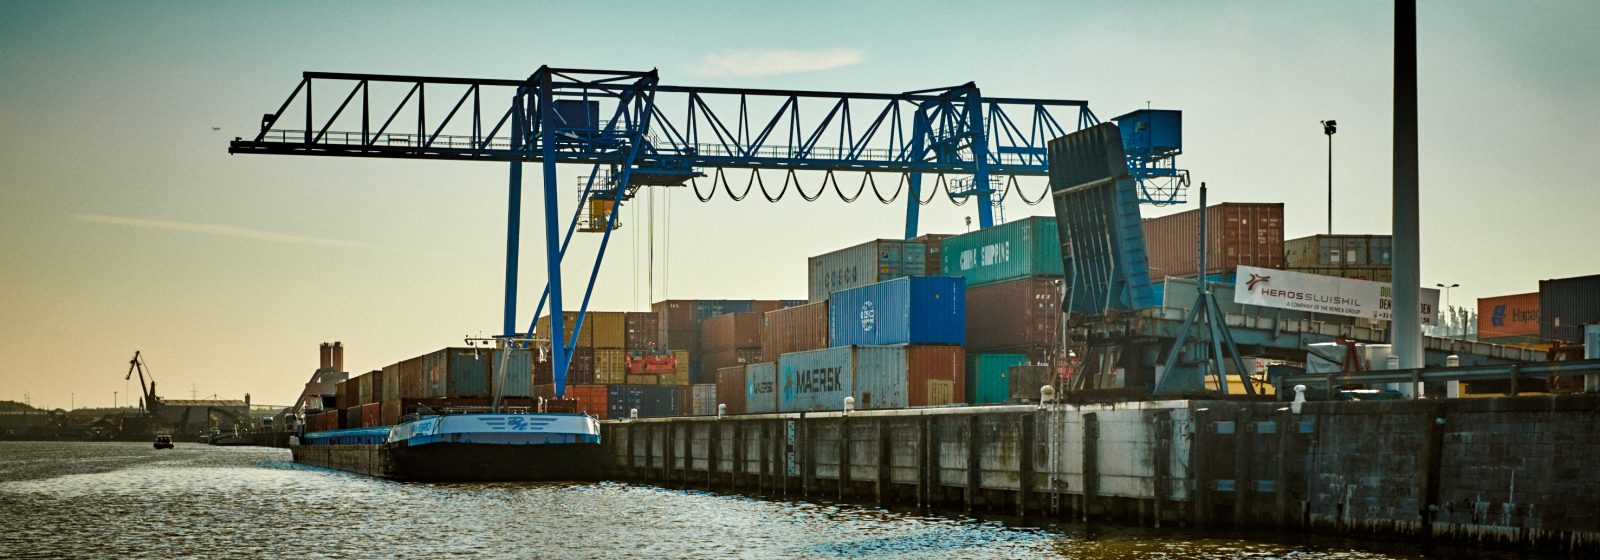 De containerterminal in de haven van Brussel